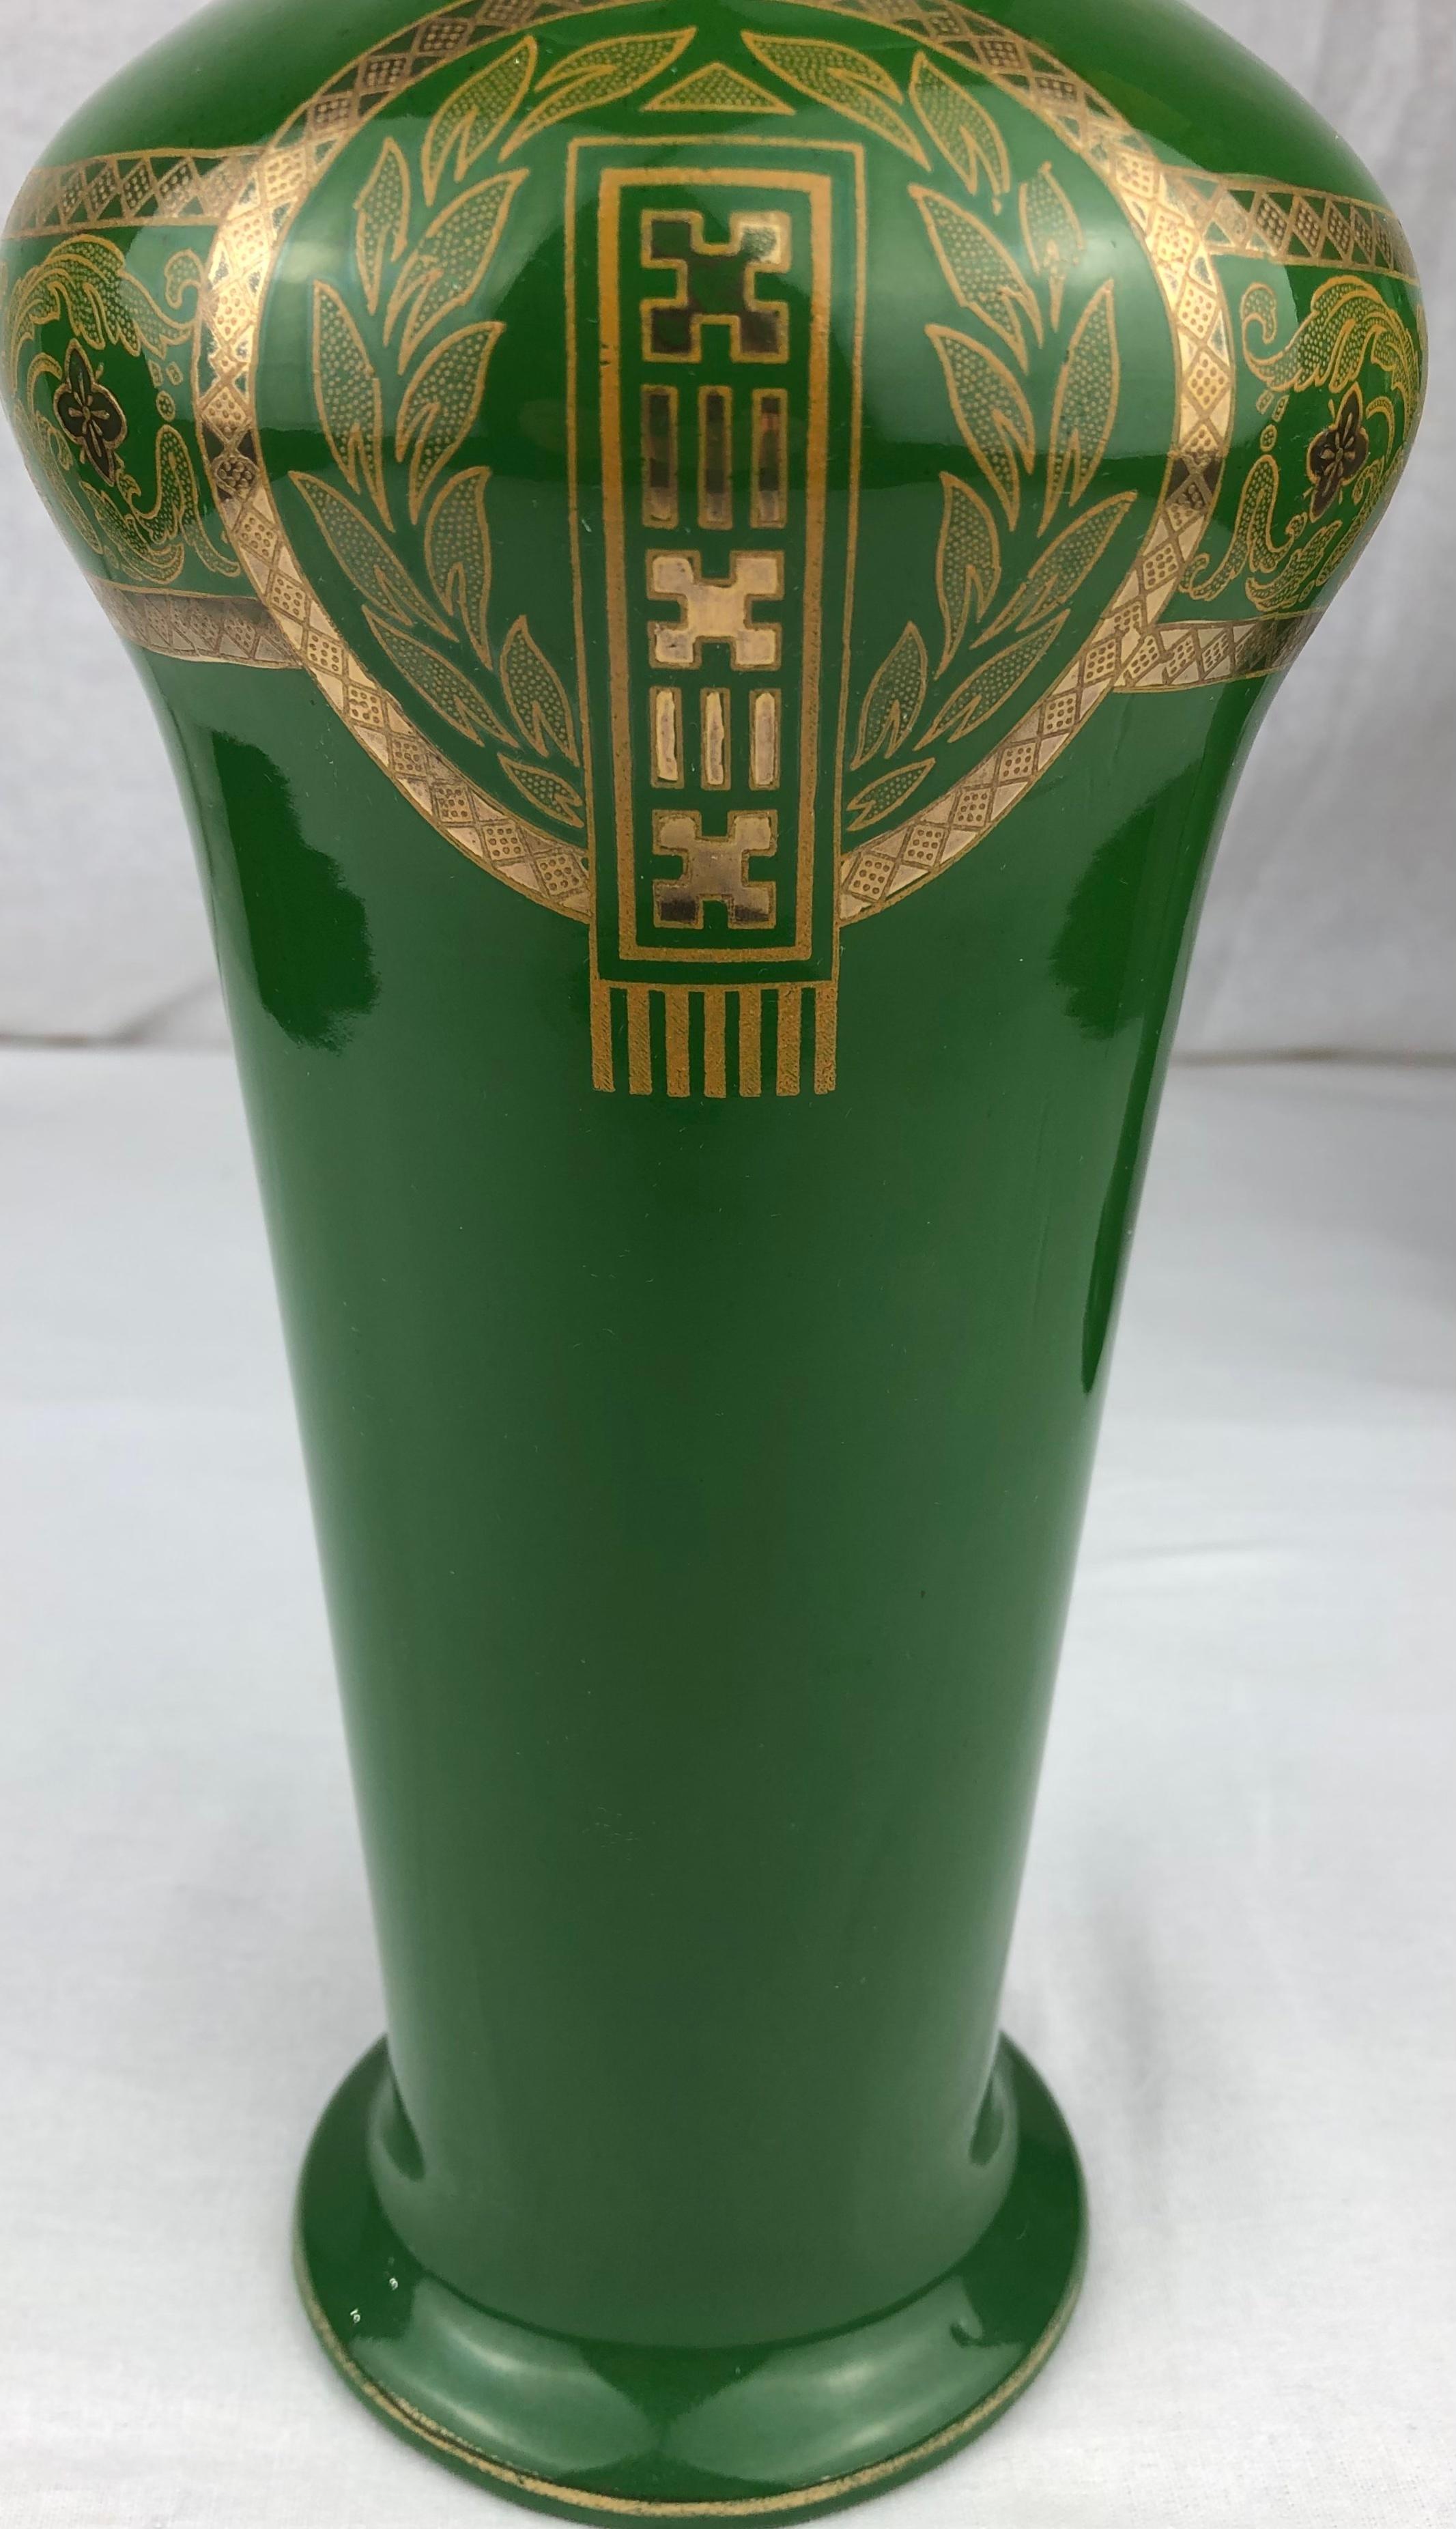 Aufwändig gestaltetes Paar französischer Art-déco-Porzellanvasen des Herstellers Sarreguemines. Diese hochwertigen Vasen sind aus sehr gutem Porzellan gefertigt und befinden sich in einem sehr guten antiken Zustand. 
Atemberaubende grüne und goldene